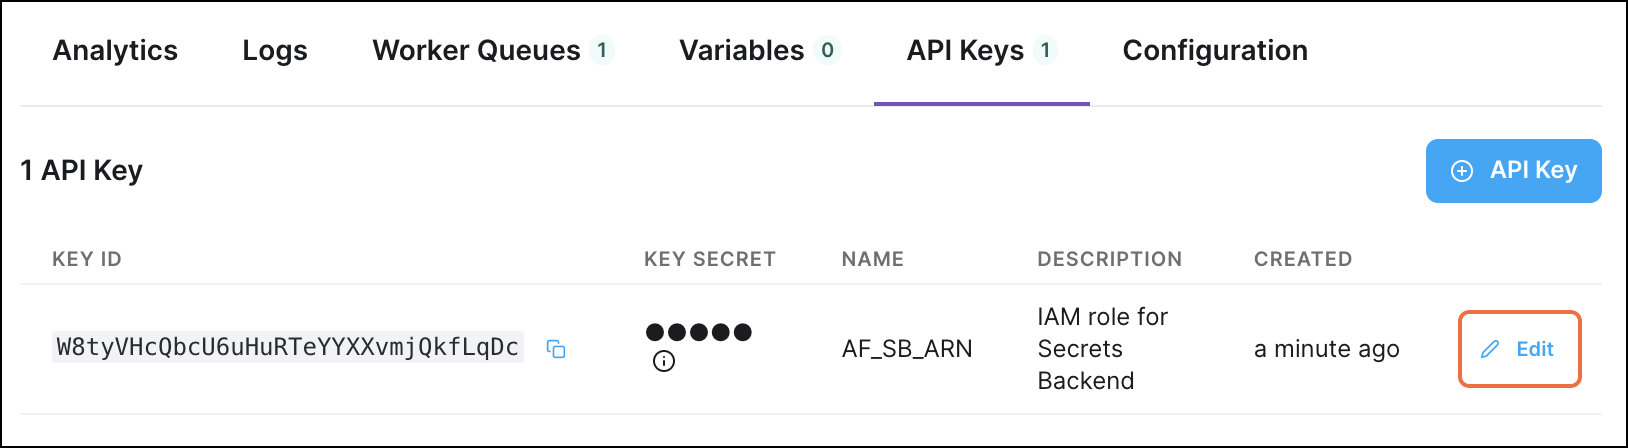 Edit API key button